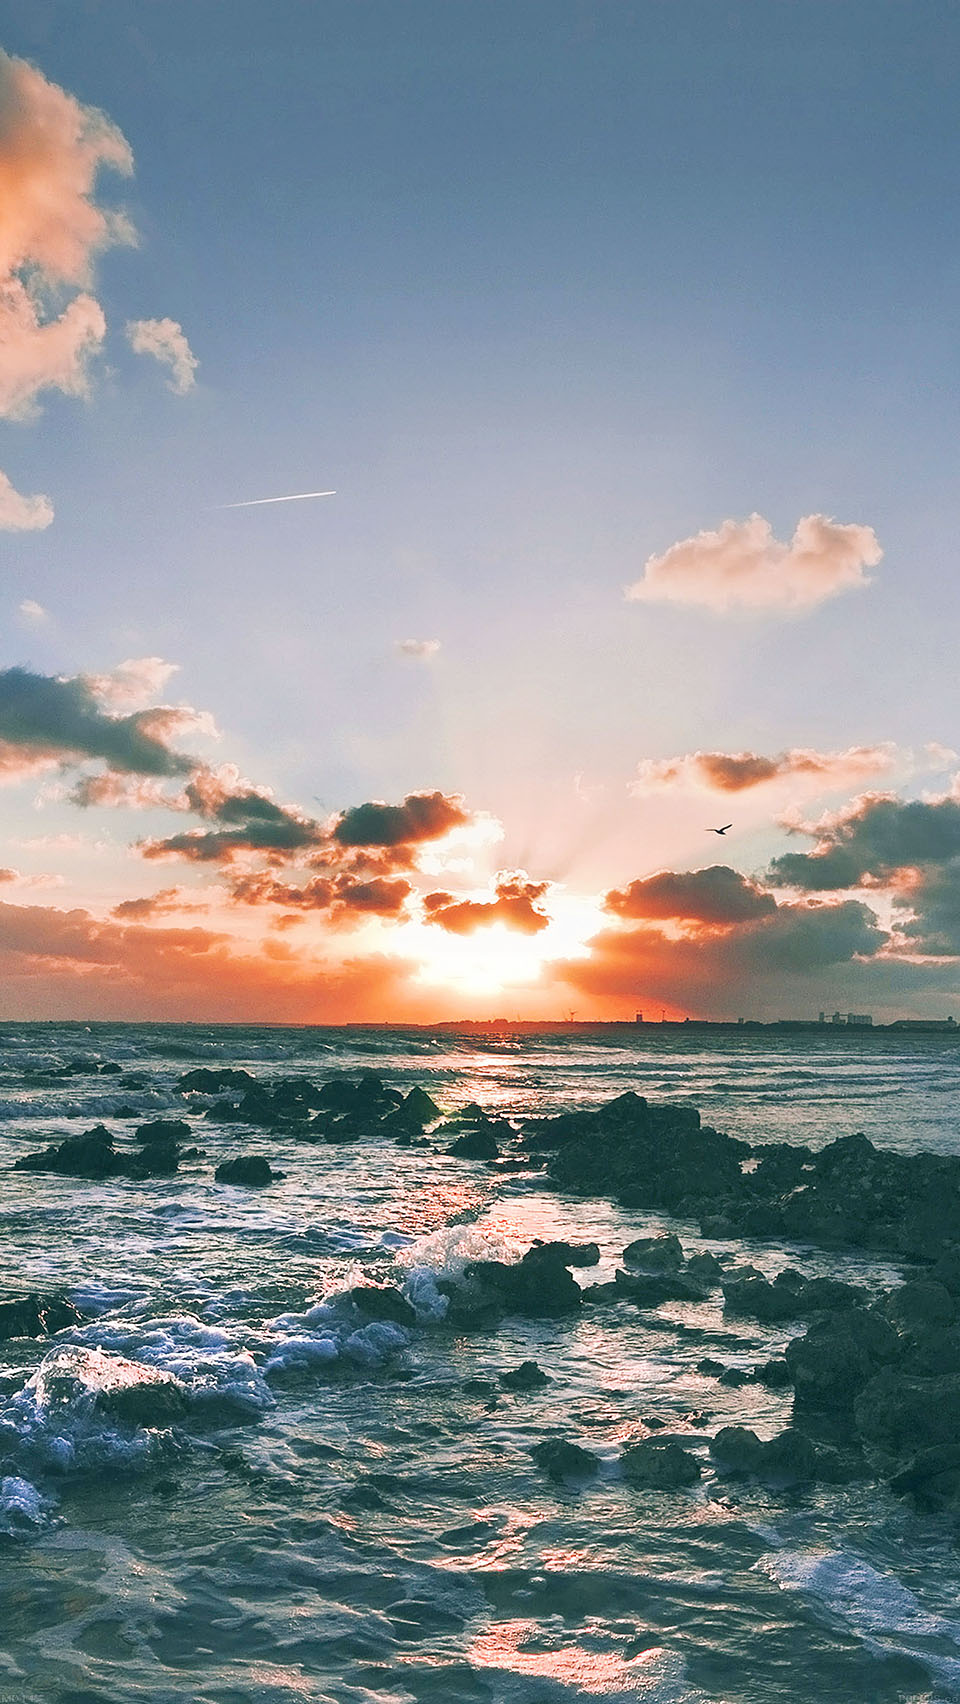 Bạn đang tìm kiếm hình nền ảnh biển đẹp mắt cho iPhone của mình? Chúng tôi chắc chắn rằng Biển Hoàng Hôn là sự lựa chọn tuyệt vời nhất để hình dung khoảnh khắc yên bình, tĩnh lặng hoàn hảo của bầu trời chuyển từ màu xanh sang màu tím. Hãy cùng tải ảnh nền Biển Hoàng Hôn ngay lập tức và trang trí cho chiếc iPhone của bạn thêm phần ấn tượng nhé!